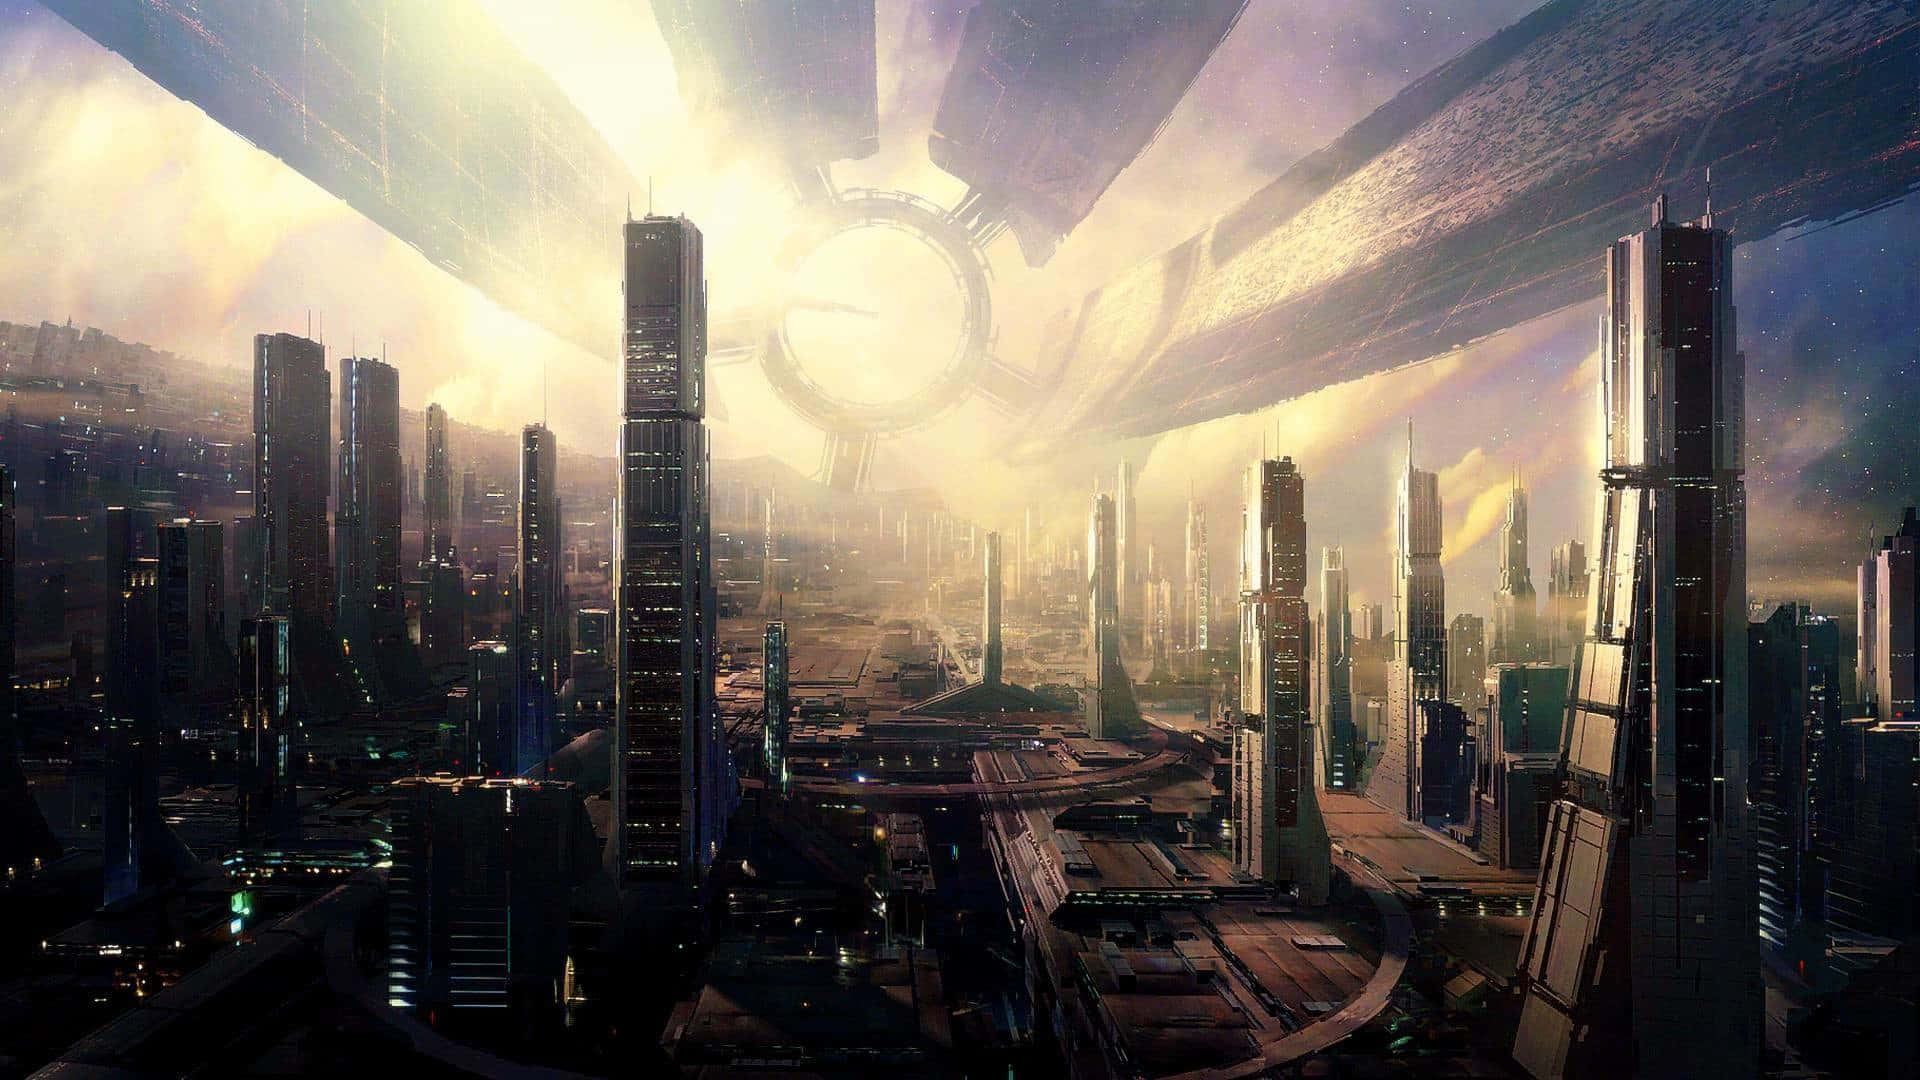 Udsyn til en fremtidig by med lyse lys og høje skyskrabere. Wallpaper